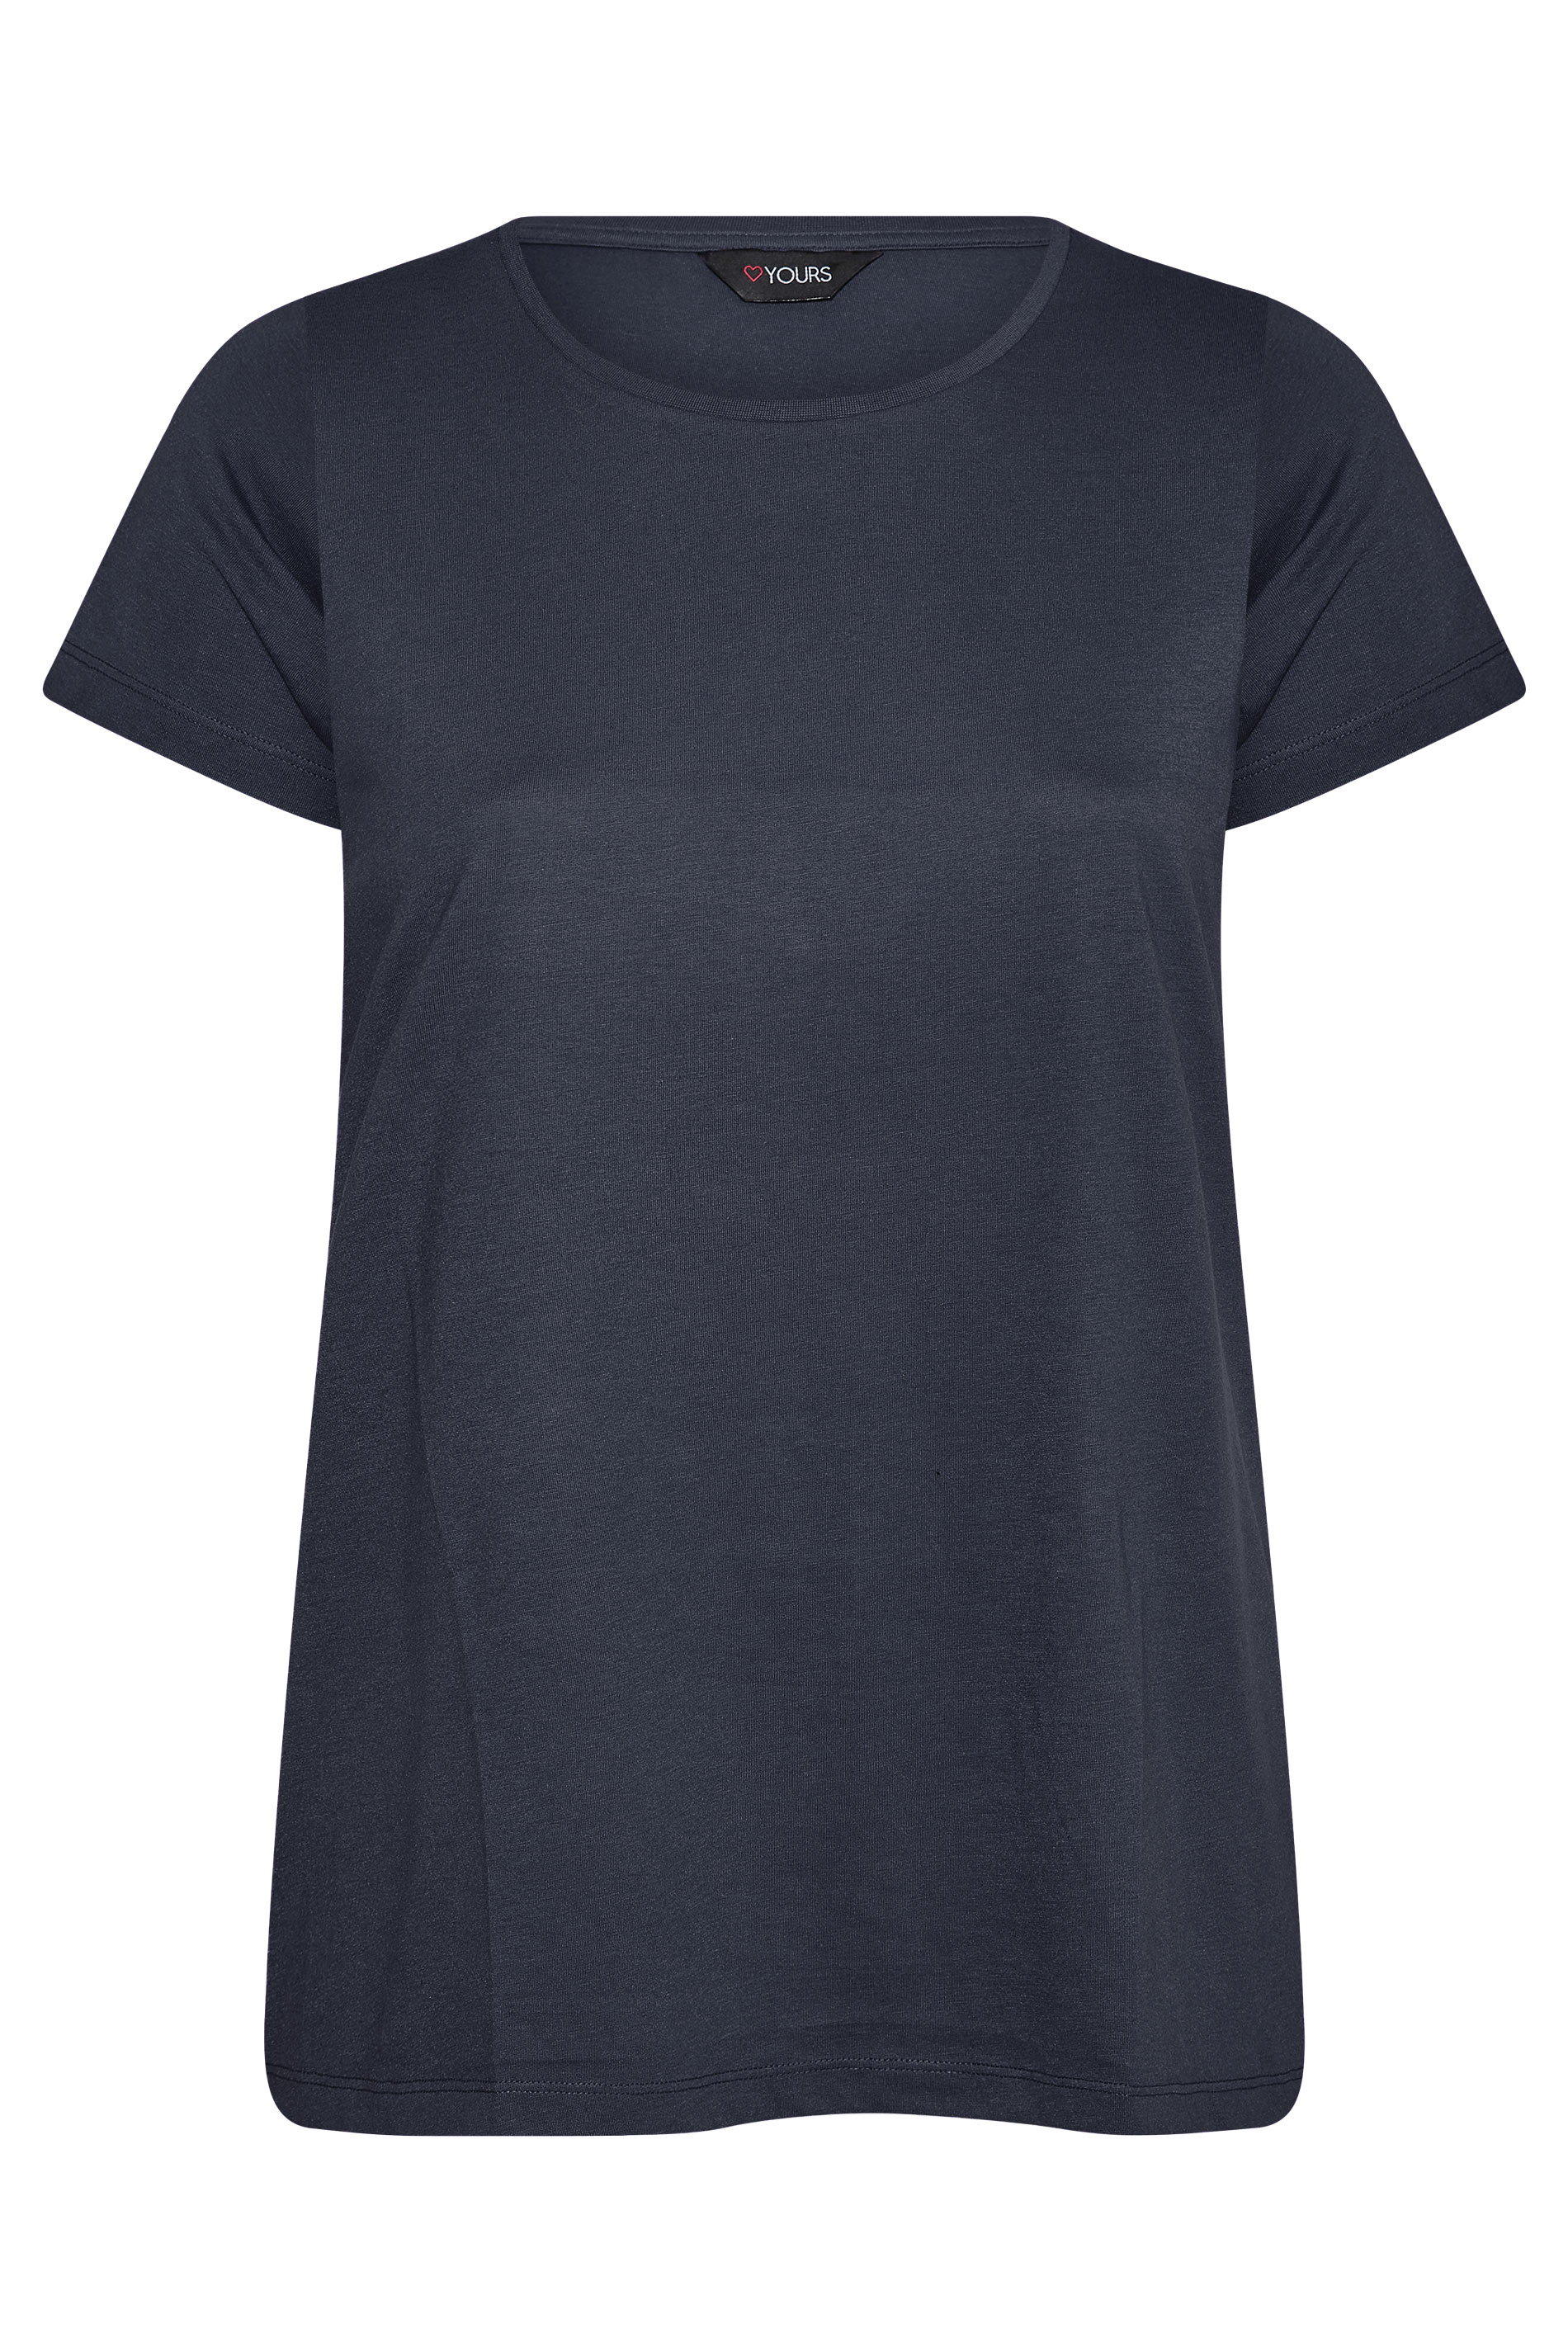 Grande taille  Tops Grande taille  T-Shirts Basiques & Débardeurs | T-Shirt Bleu Marine Manches Courtes en Jersey - PF12192